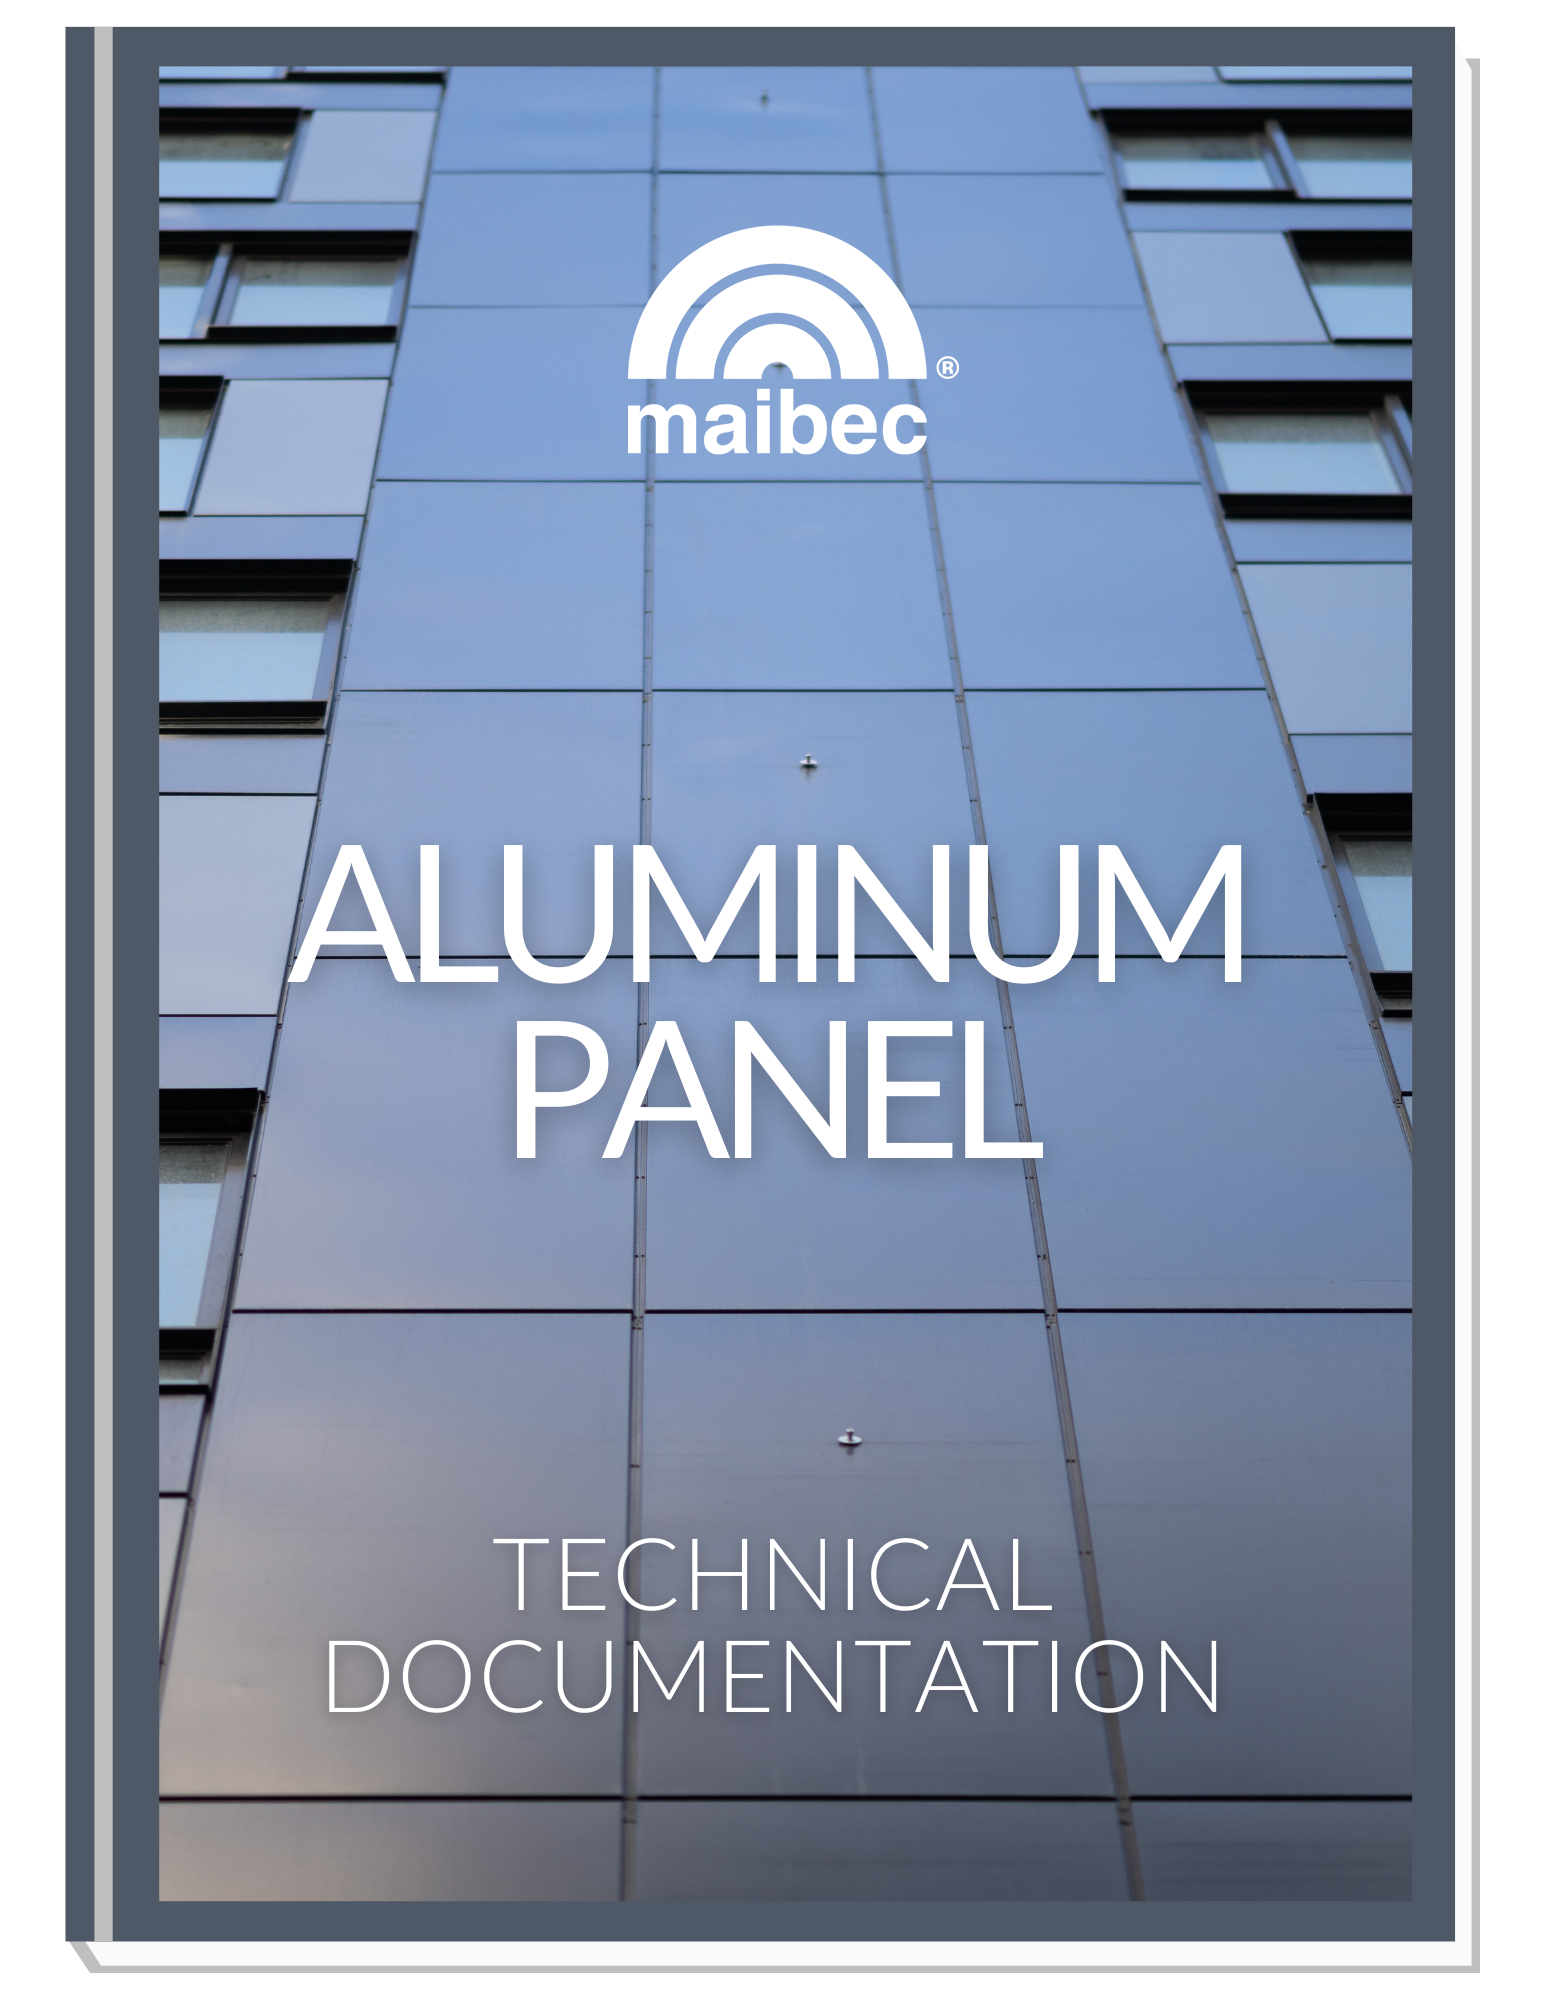 Maibec - Aluminum panel